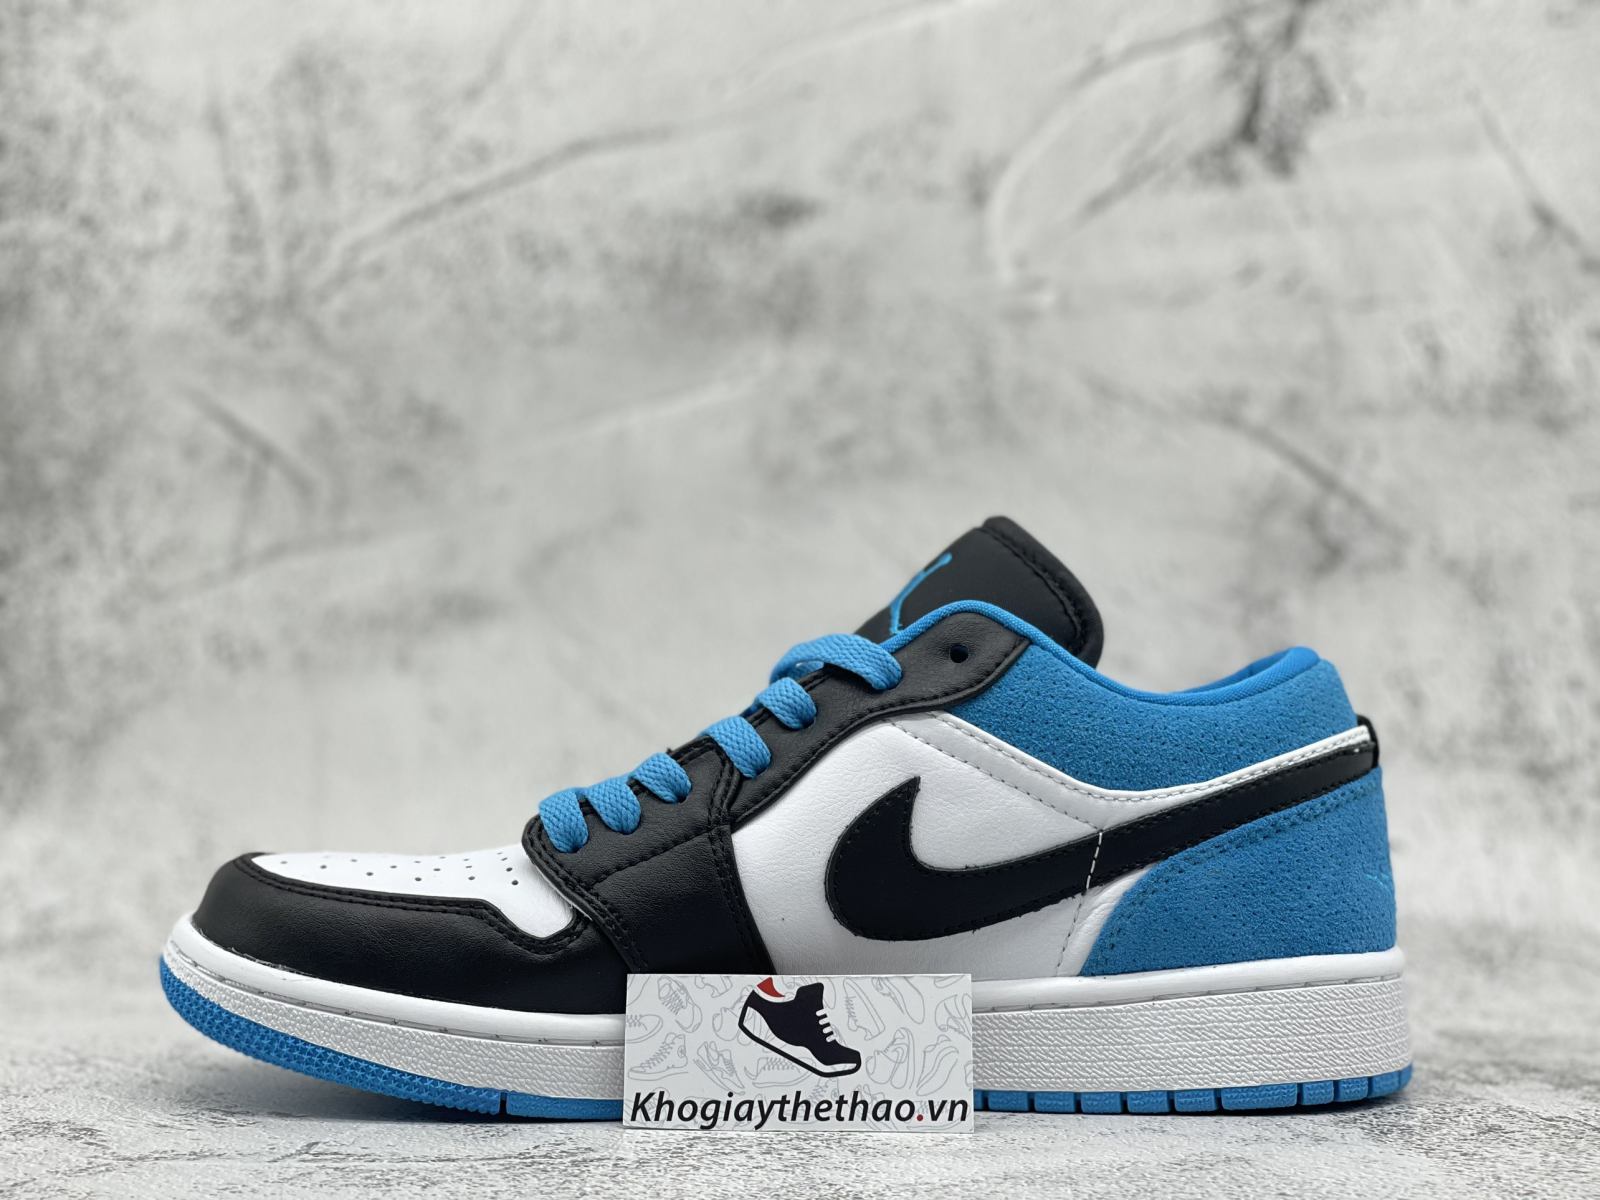 Nike Jordan 1 Low Laser Blue Xanh